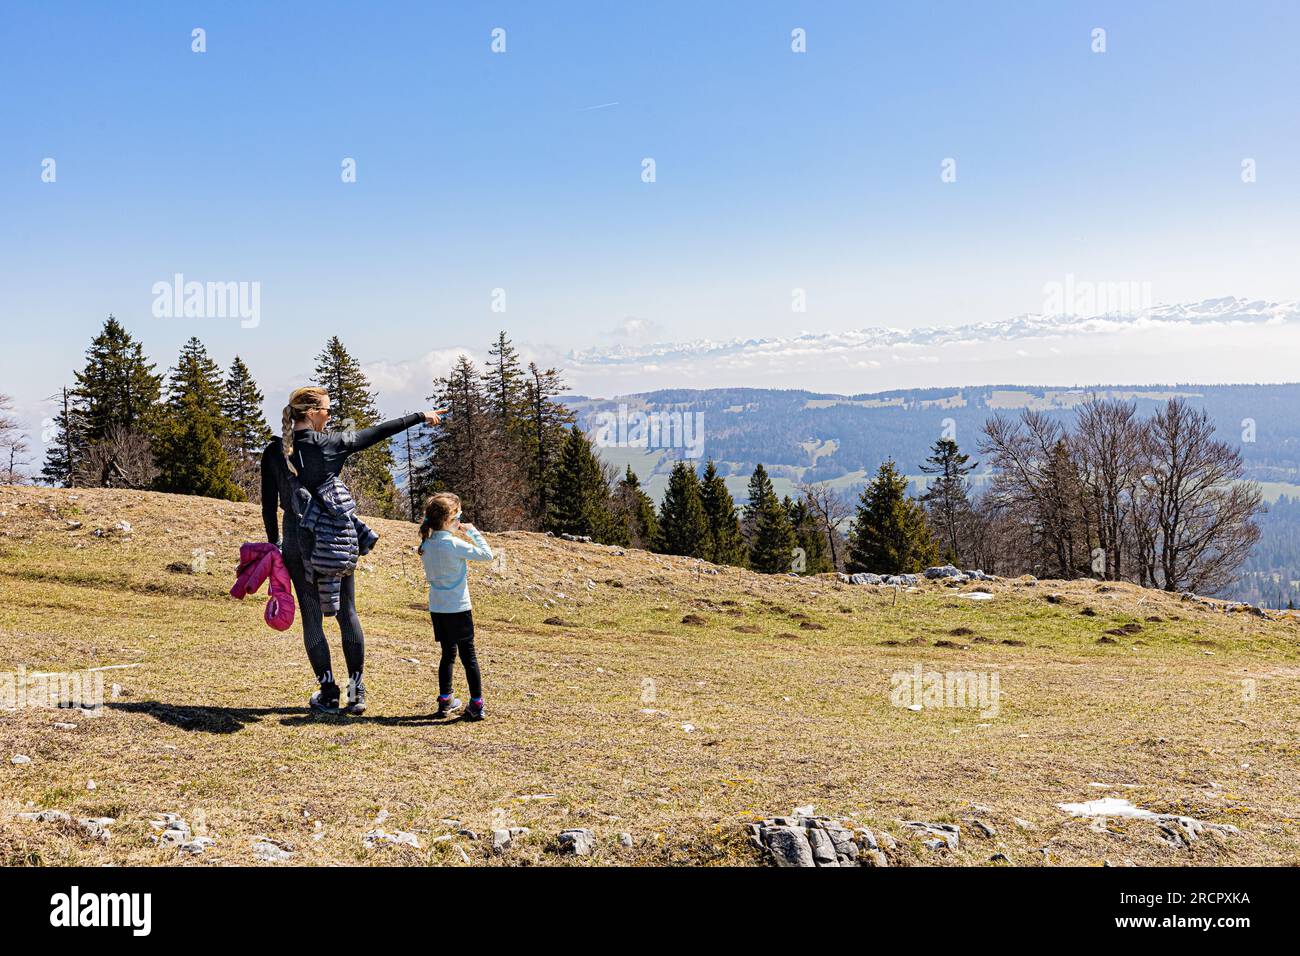 La Dent de Vaulion en Suisse dans la vallée de Joux, cantone di Vaud. Située à 1500 m d'altitudine avec un panorama à 360°. Vue sur le lac de Joux. Lorsqu Foto Stock